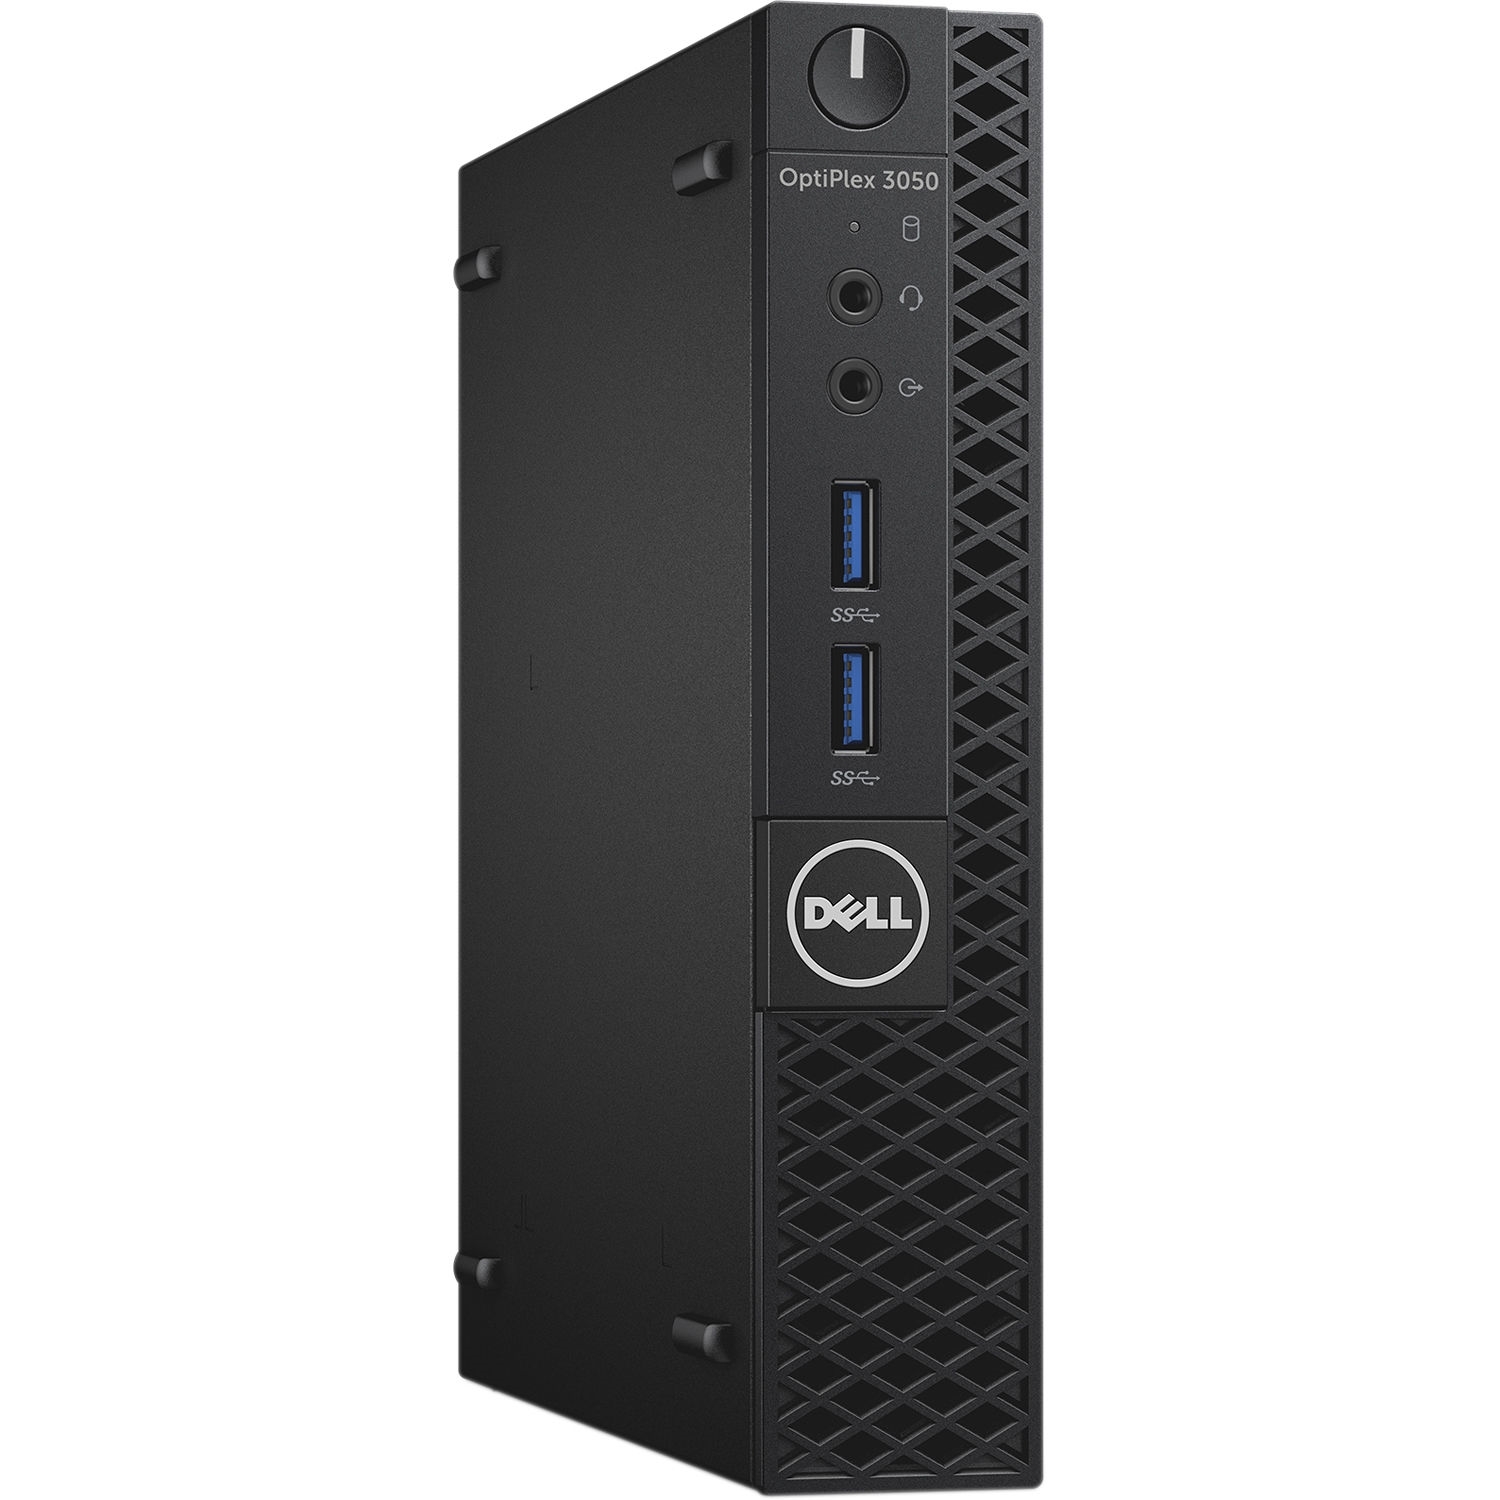 Dell Refurbished Dell Optiplex 3050 Intel Core i5-7500T X4 2.7GHz 8GB 500GB Win10, Black (Certified Refurbished)